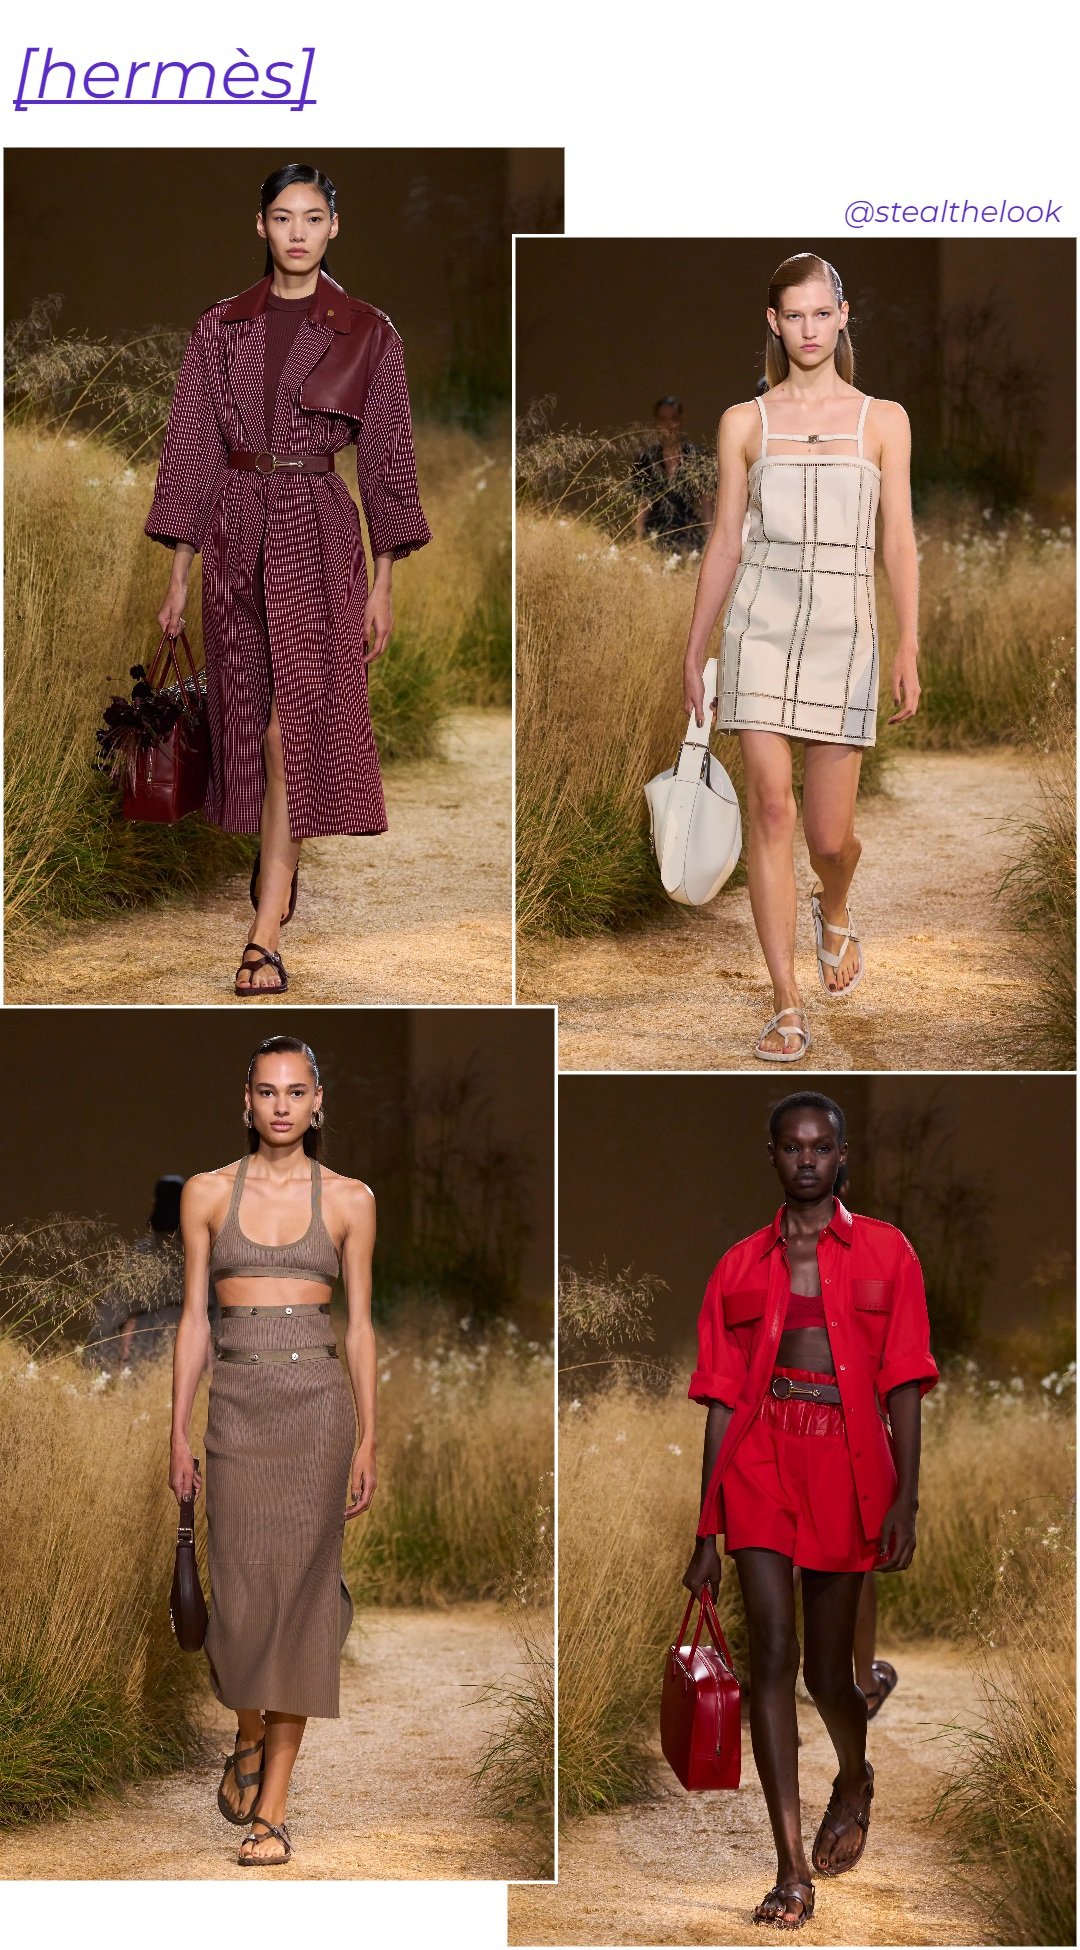 Hermès - roupas diversas - Paris Fashion Week - verão - colagem de imagens - https://stealthelook.com.br